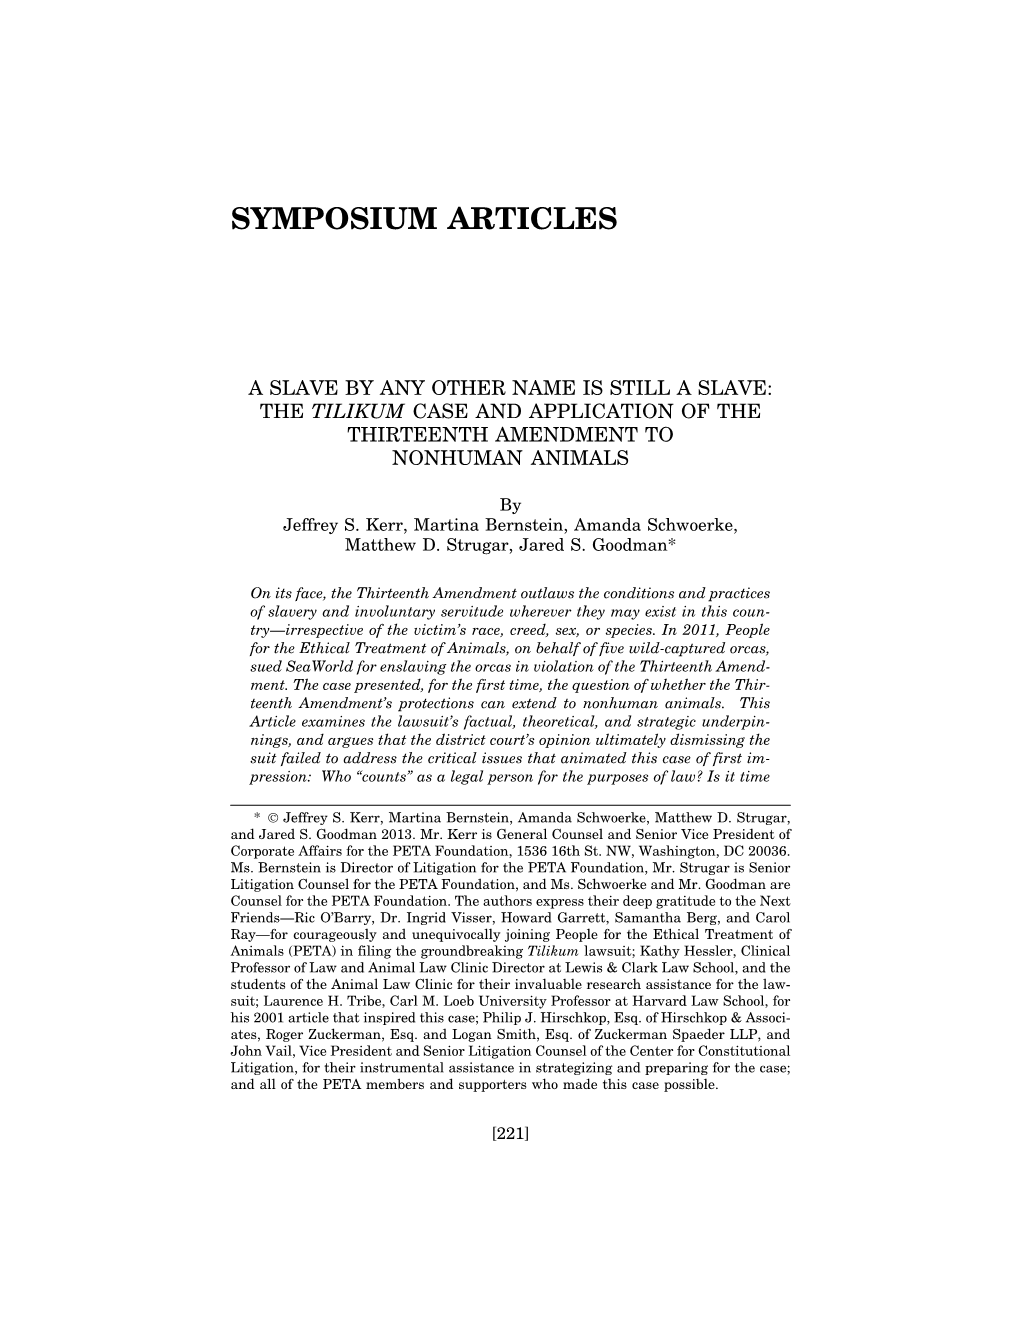 Symposium Articles